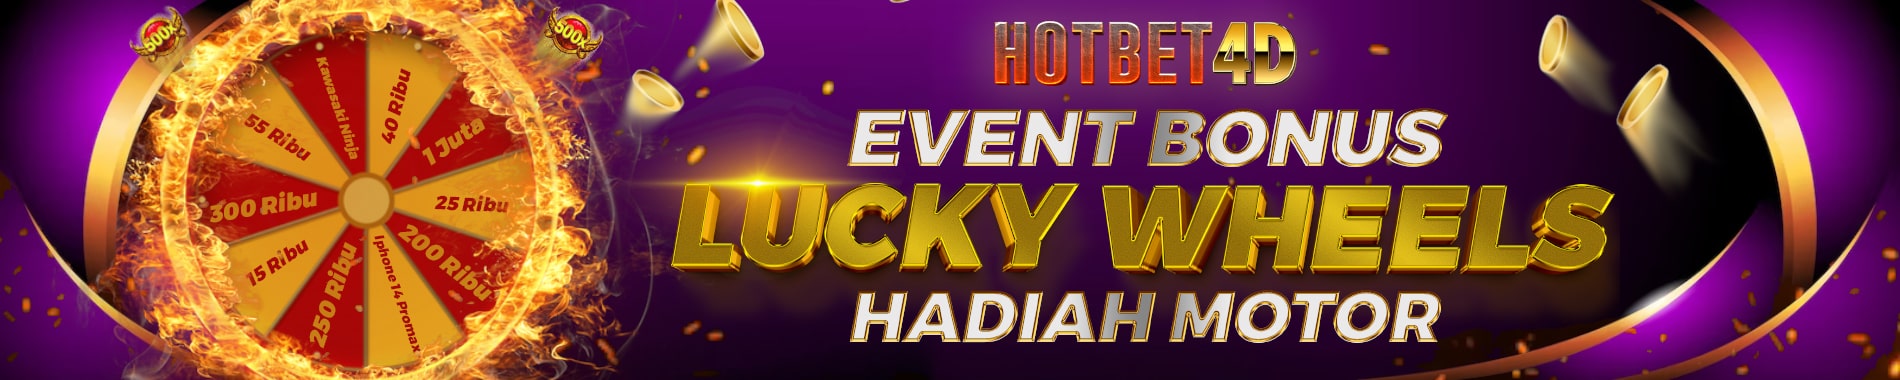 Hotbet4d | Event Bonus Lucky Wheels